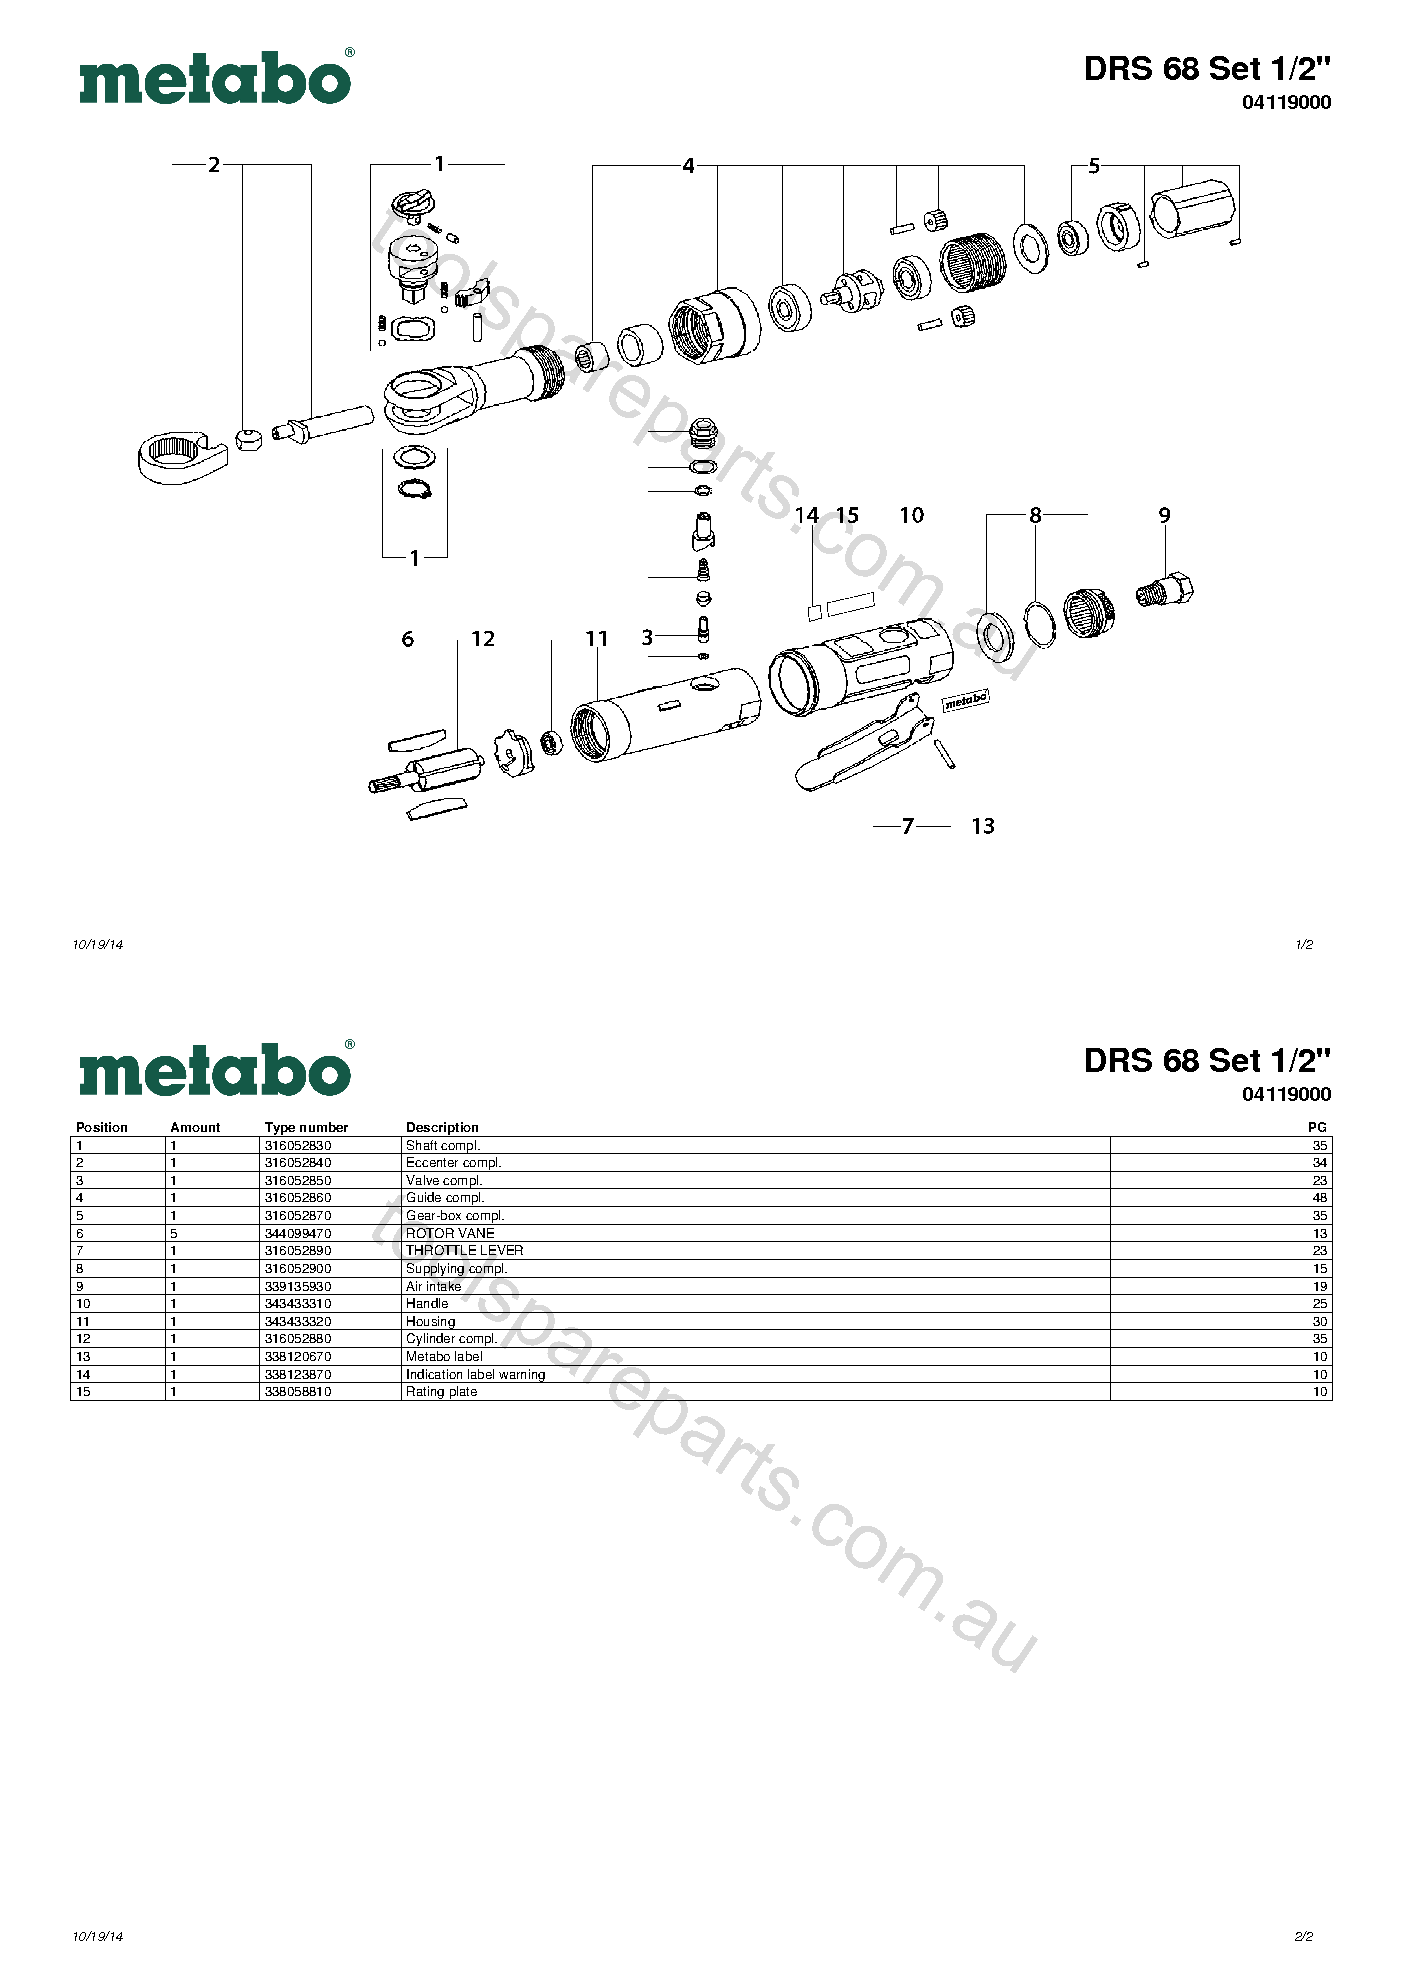 Metabo DRS 68 Set 1/2